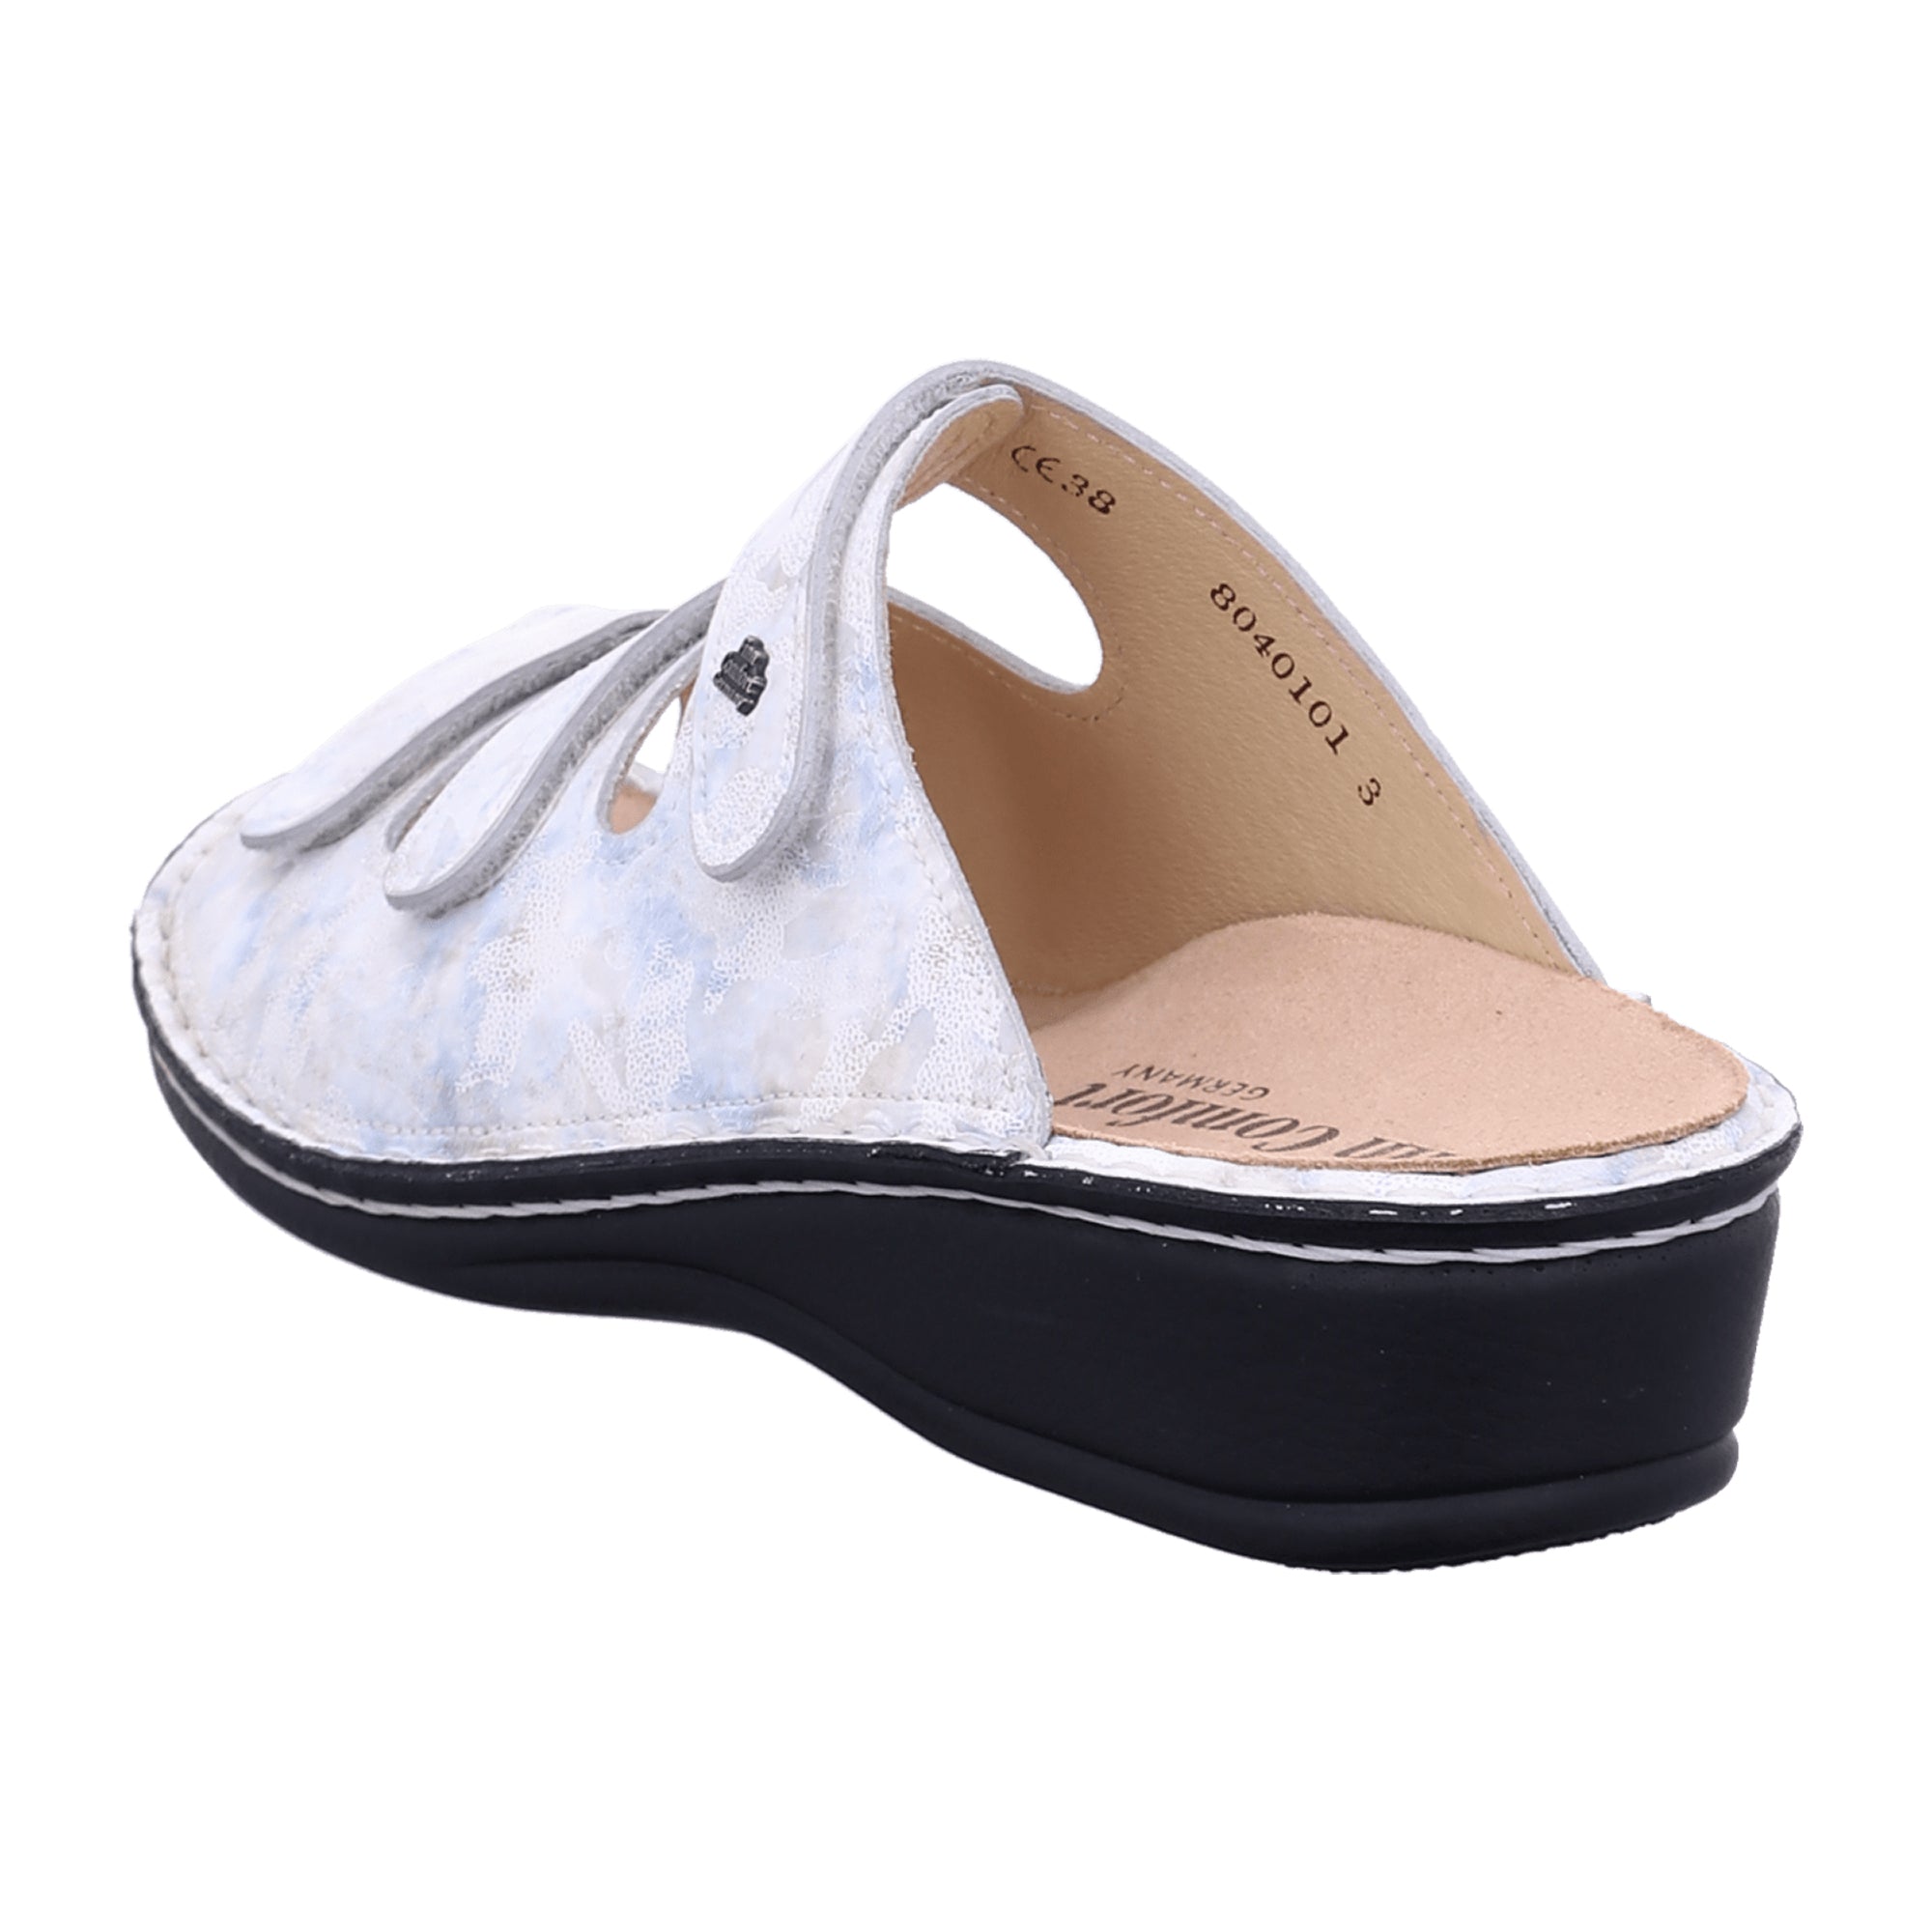 Finn Comfort Pisa Women's Sandals - Elegant White